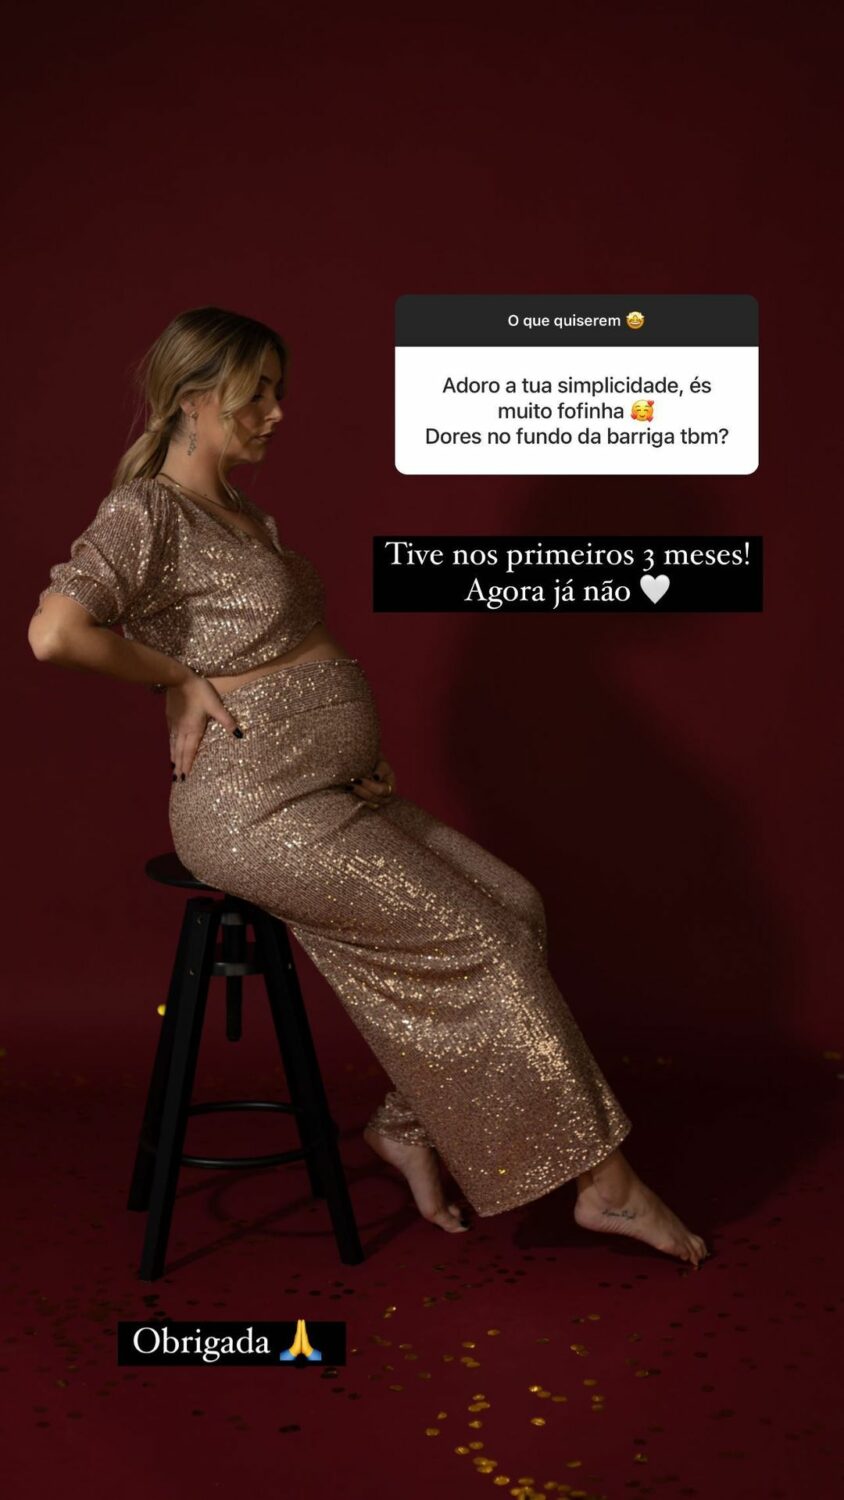 Carolina Pinto faz &#8220;confissão&#8221; sobre primeiro trimestre de gravidez: &#8220;Um desastre&#8230;&#8221;